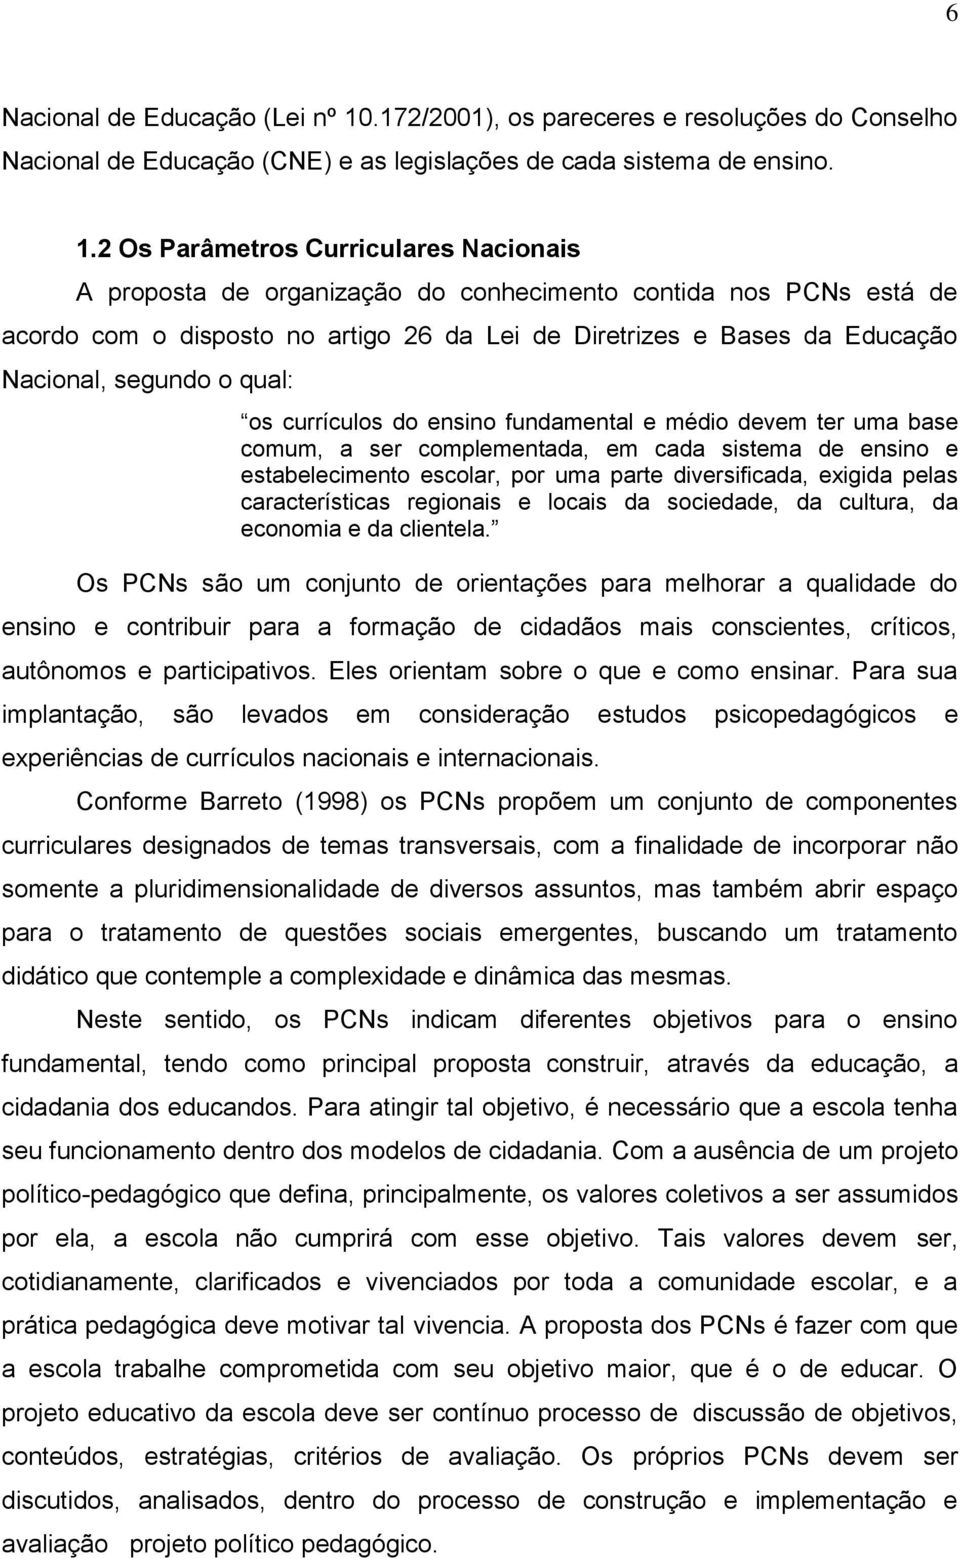 2 Os Parâmetros Curriculares Nacionais A proposta de organização do conhecimento contida nos PCNs está de acordo com o disposto no artigo 26 da Lei de Diretrizes e Bases da Educação Nacional, segundo